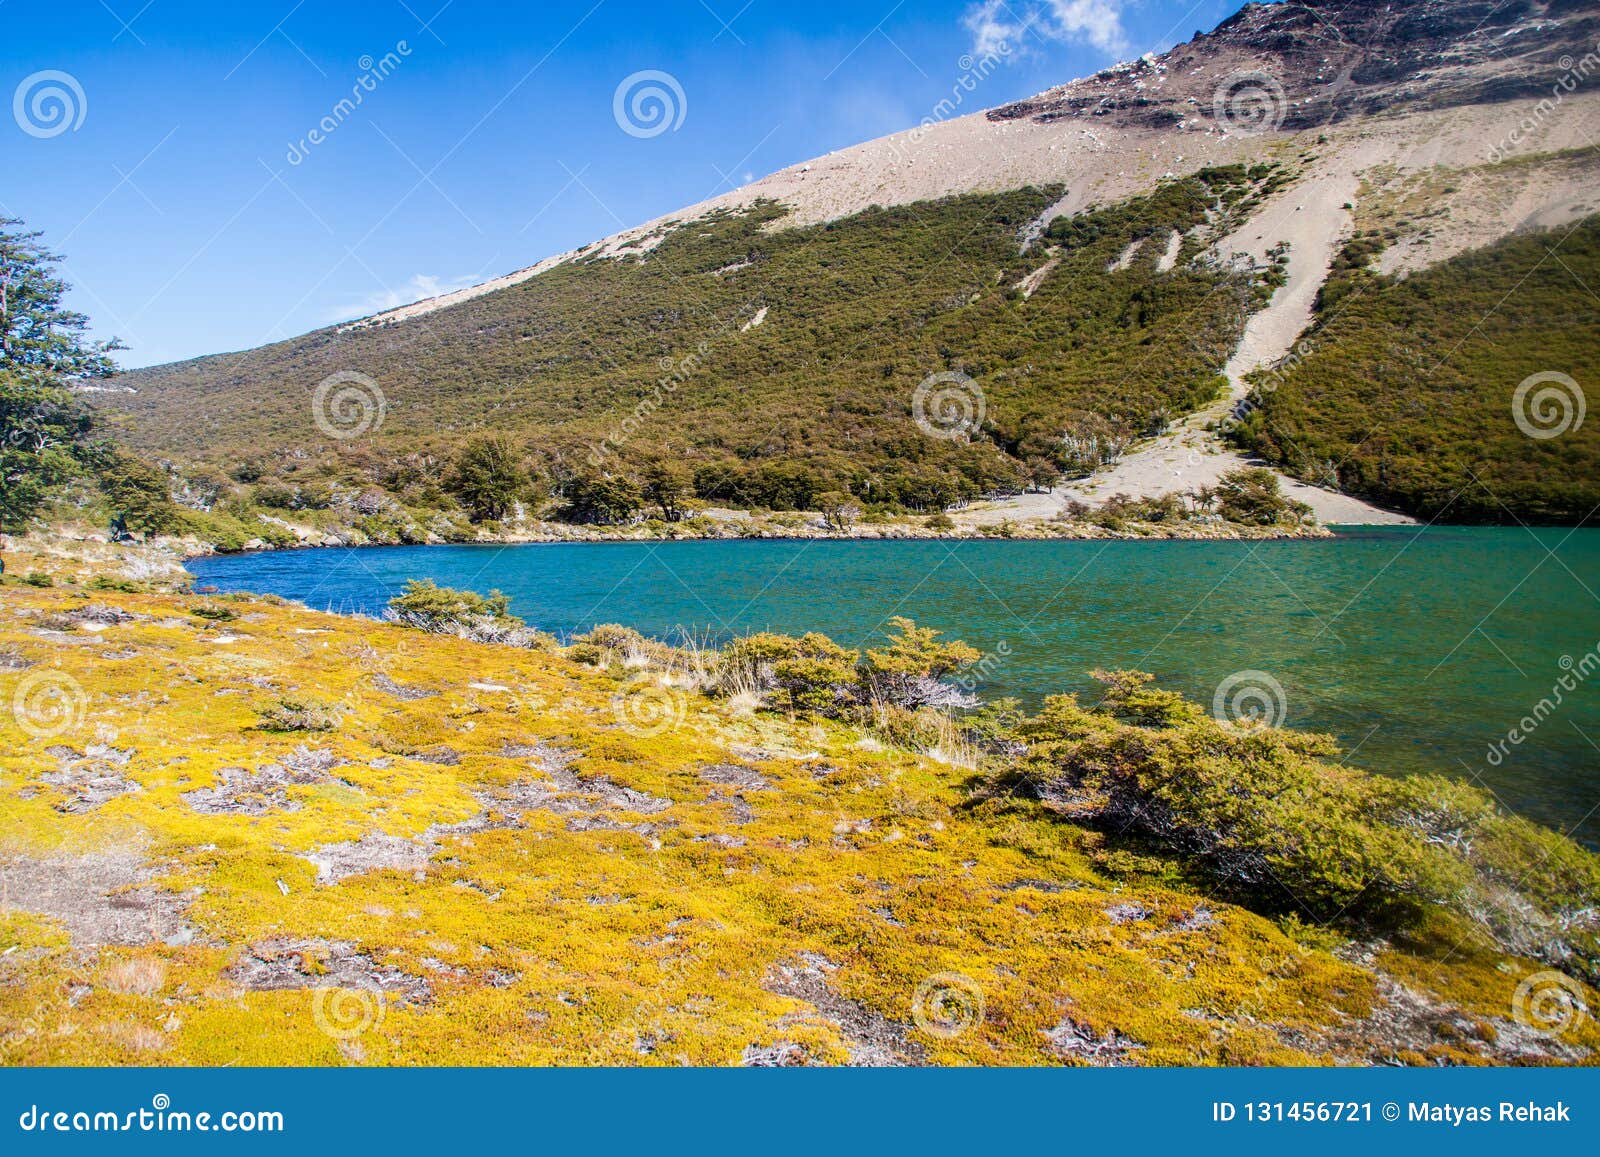 laguna madre e hija lake in national park los glaciares, patagonia, argenti